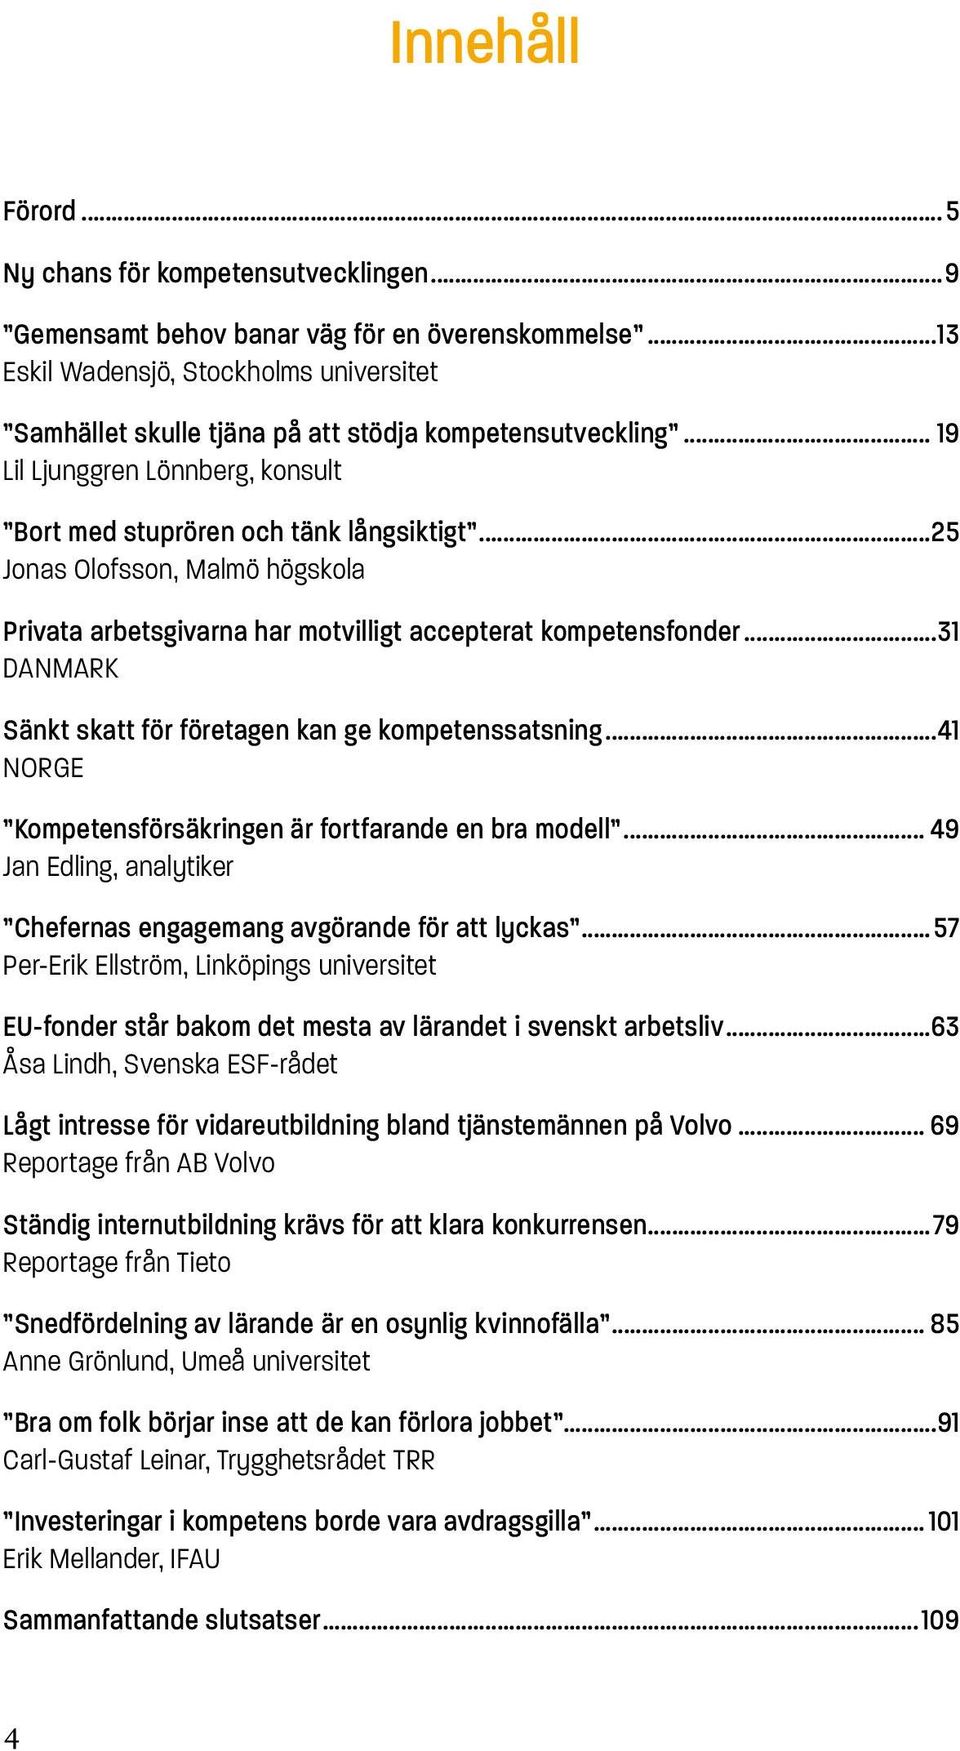 ..25 Jonas Olofsson, Malmö högskola Privata arbetsgivarna har motvilligt accepterat kompetensfonder...31 DANMARK Sänkt skatt för företagen kan ge kompetenssatsning.